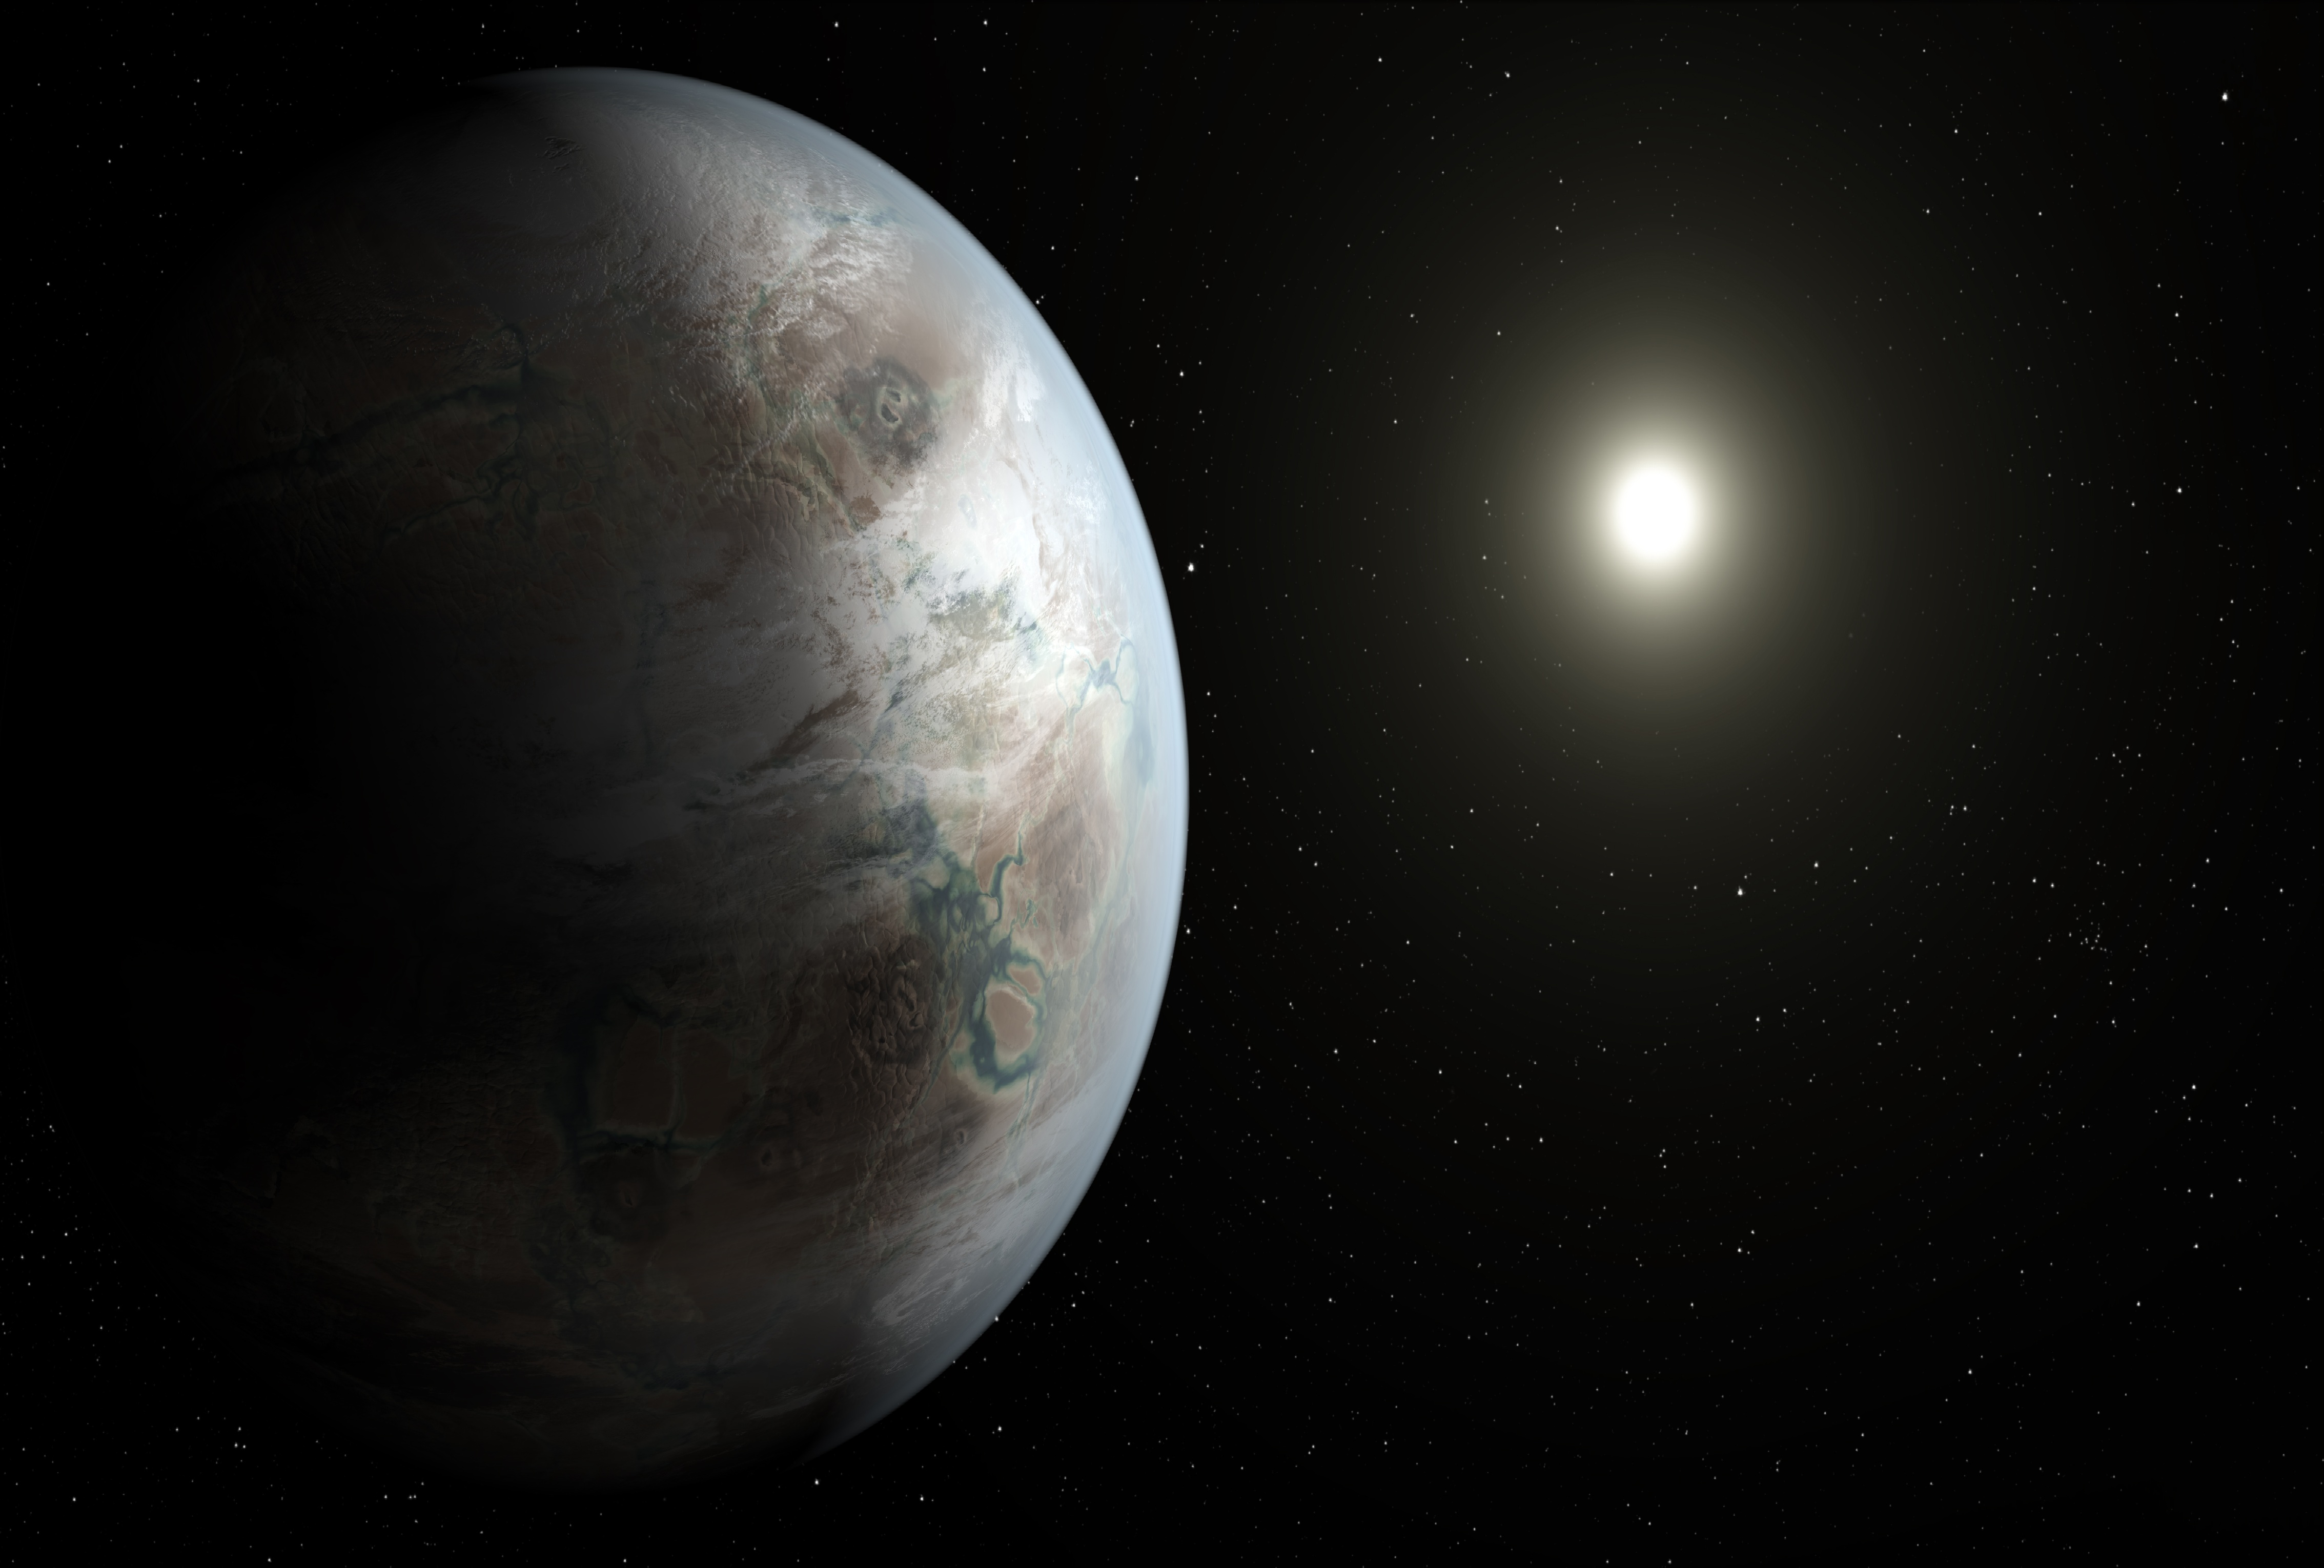 Concepción artística de la posible apariencia del exoplaneta Kepler-452b. Imagen: NASA Ames/JPL-Caltech/T. Pyle.